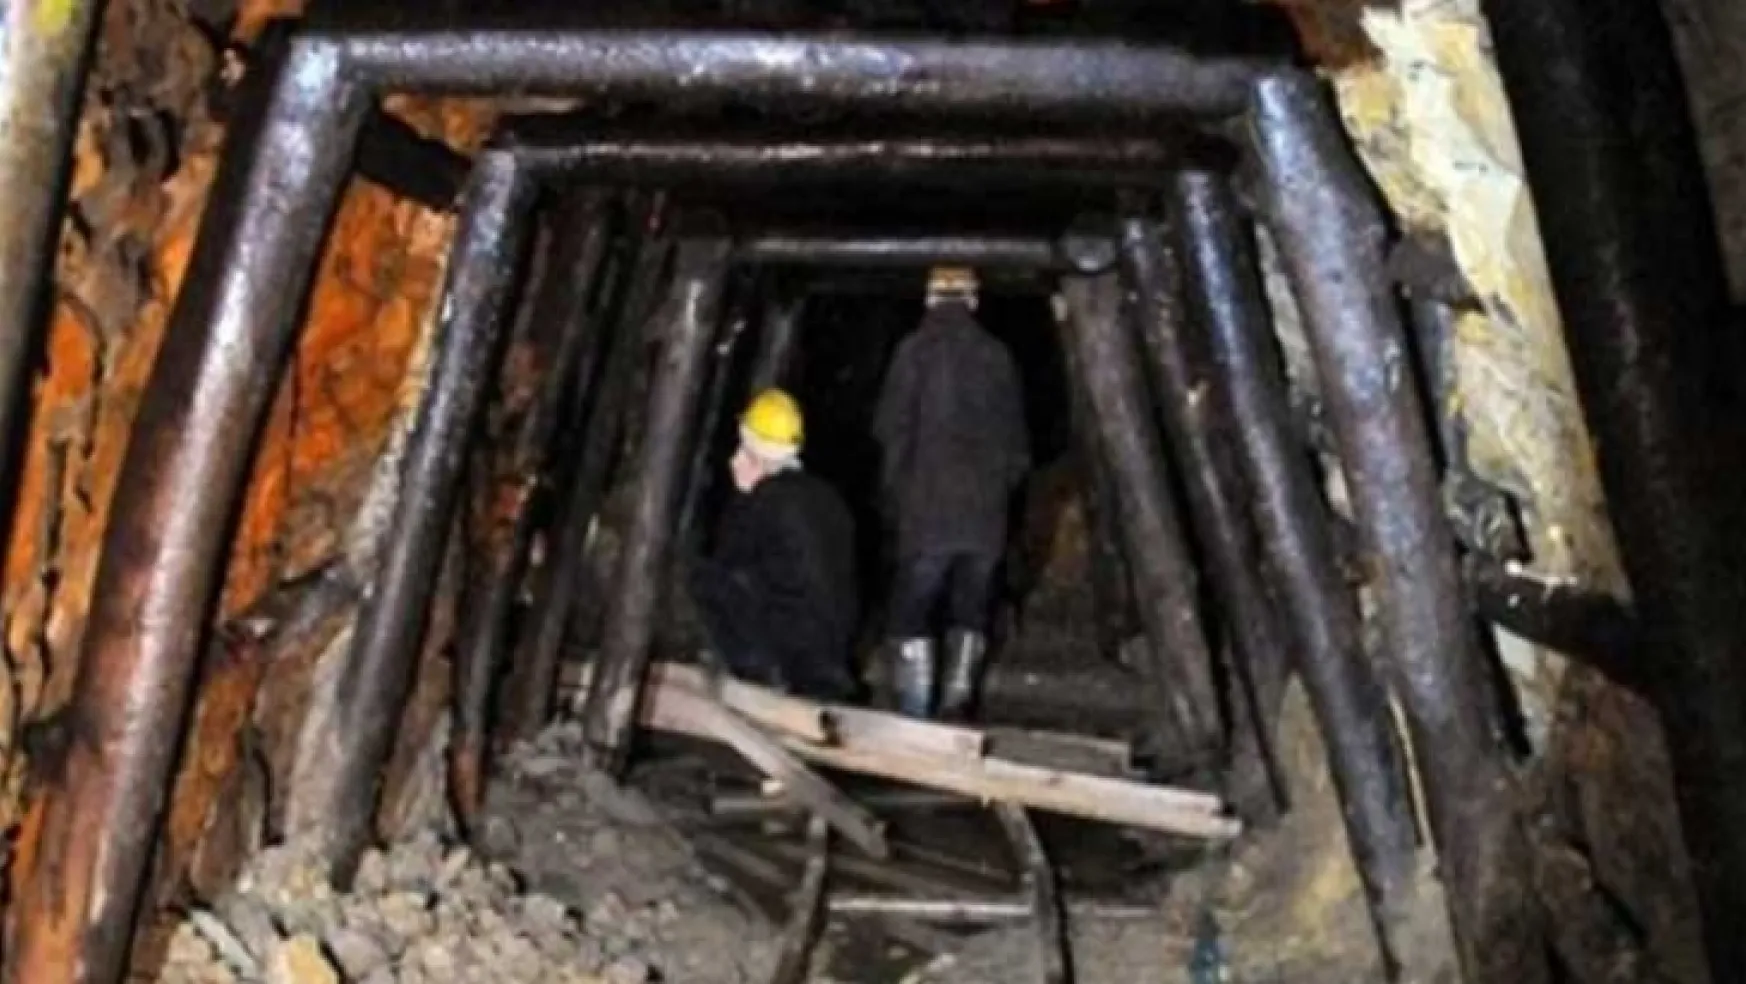 Zonguldak'ta ruhsatsız maden ocağında tavan çöktü: 1 yaralı